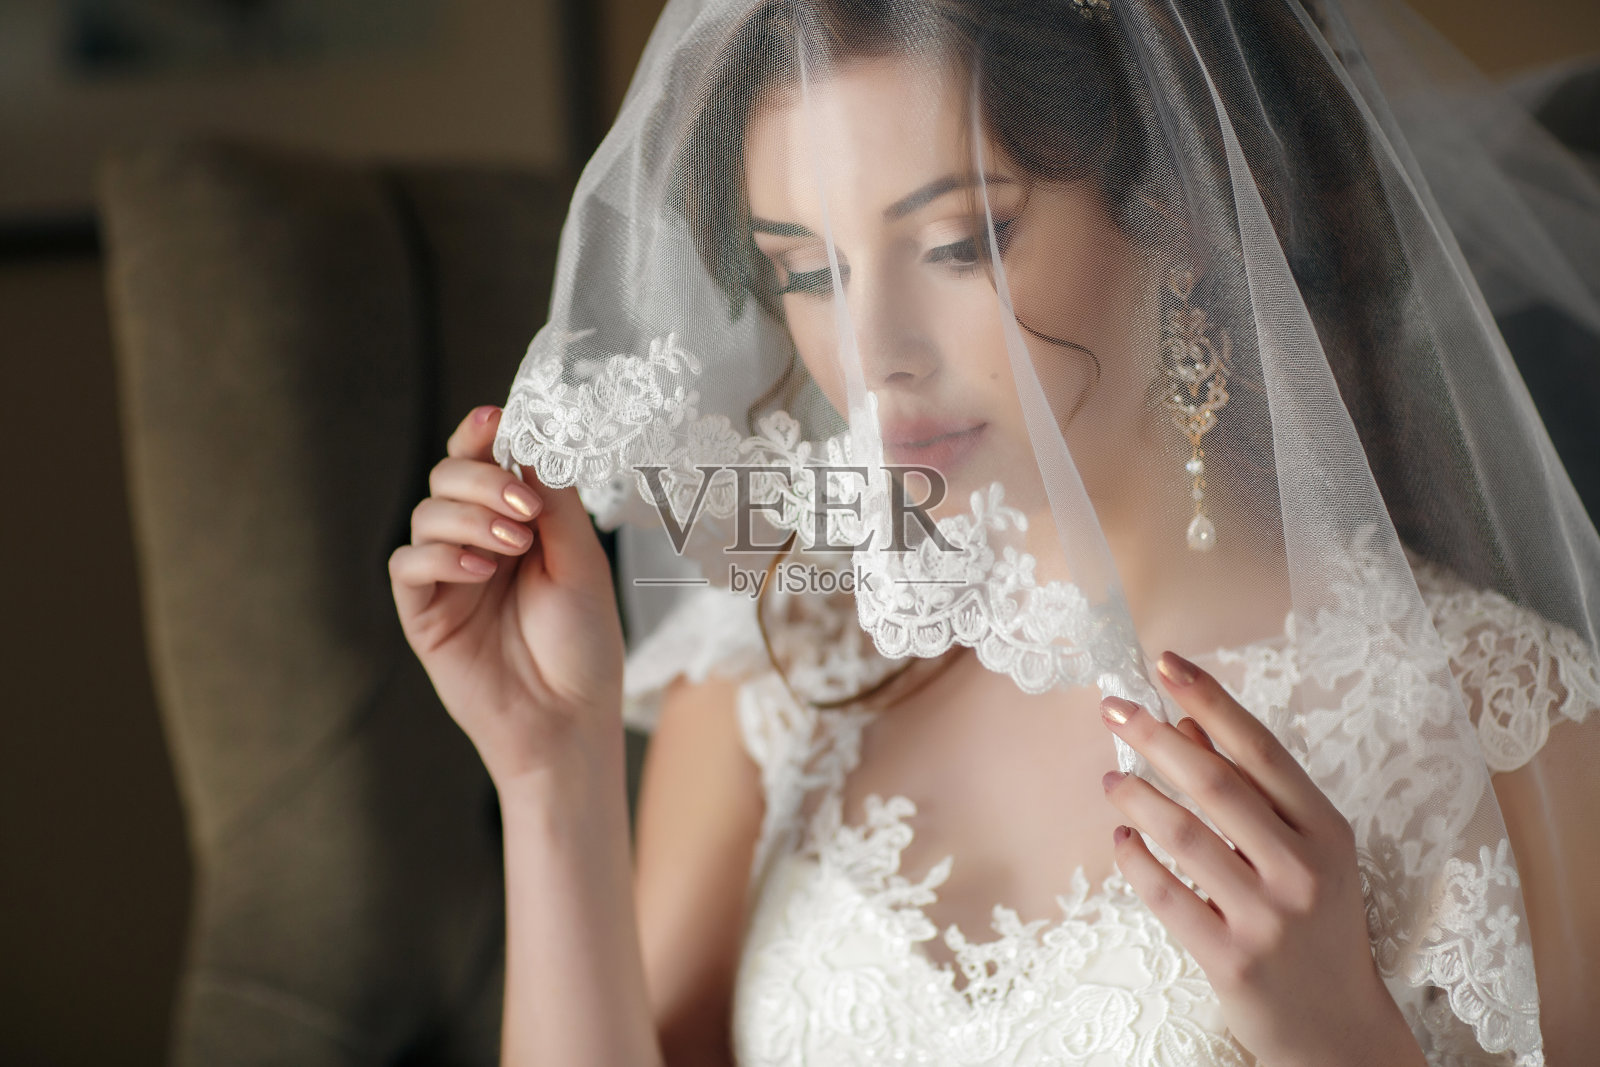 穿着白色婚纱和面纱的美丽新娘照片摄影图片